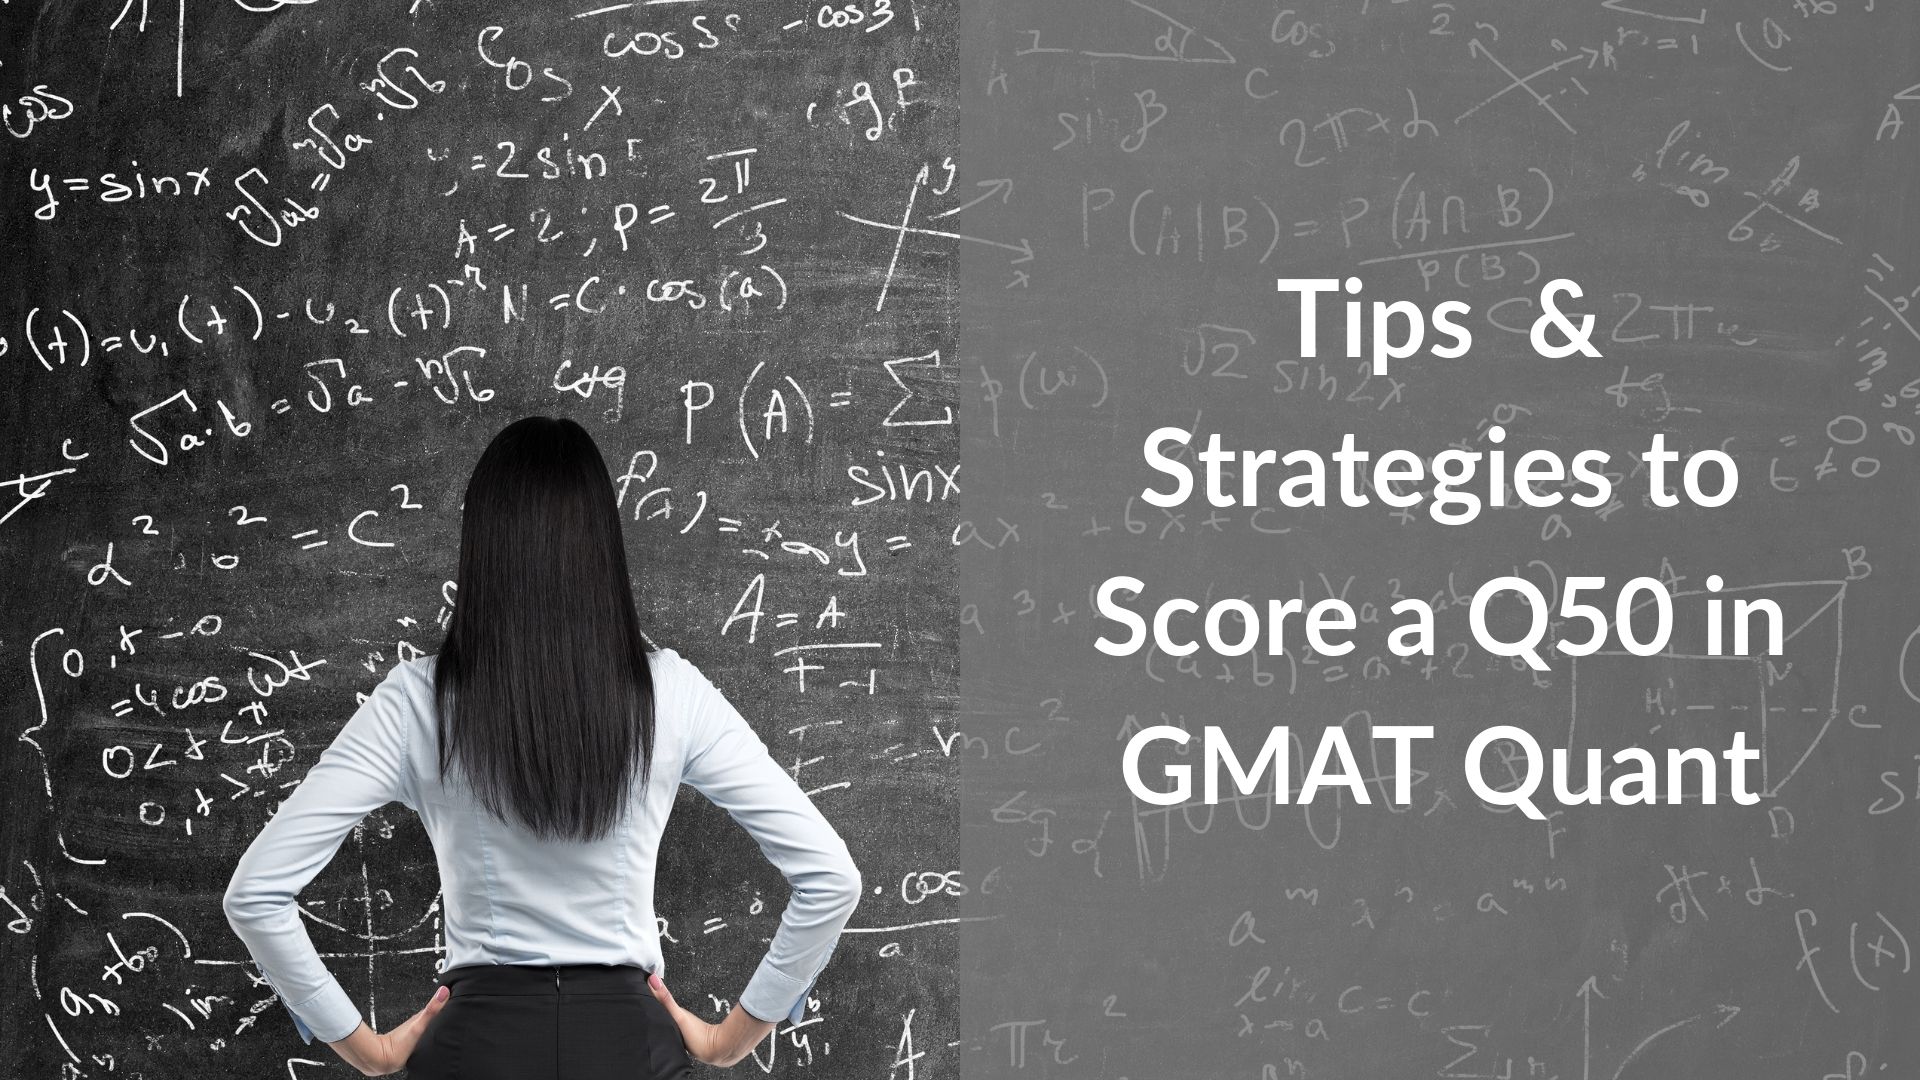 GMAT quant tips score a Q50